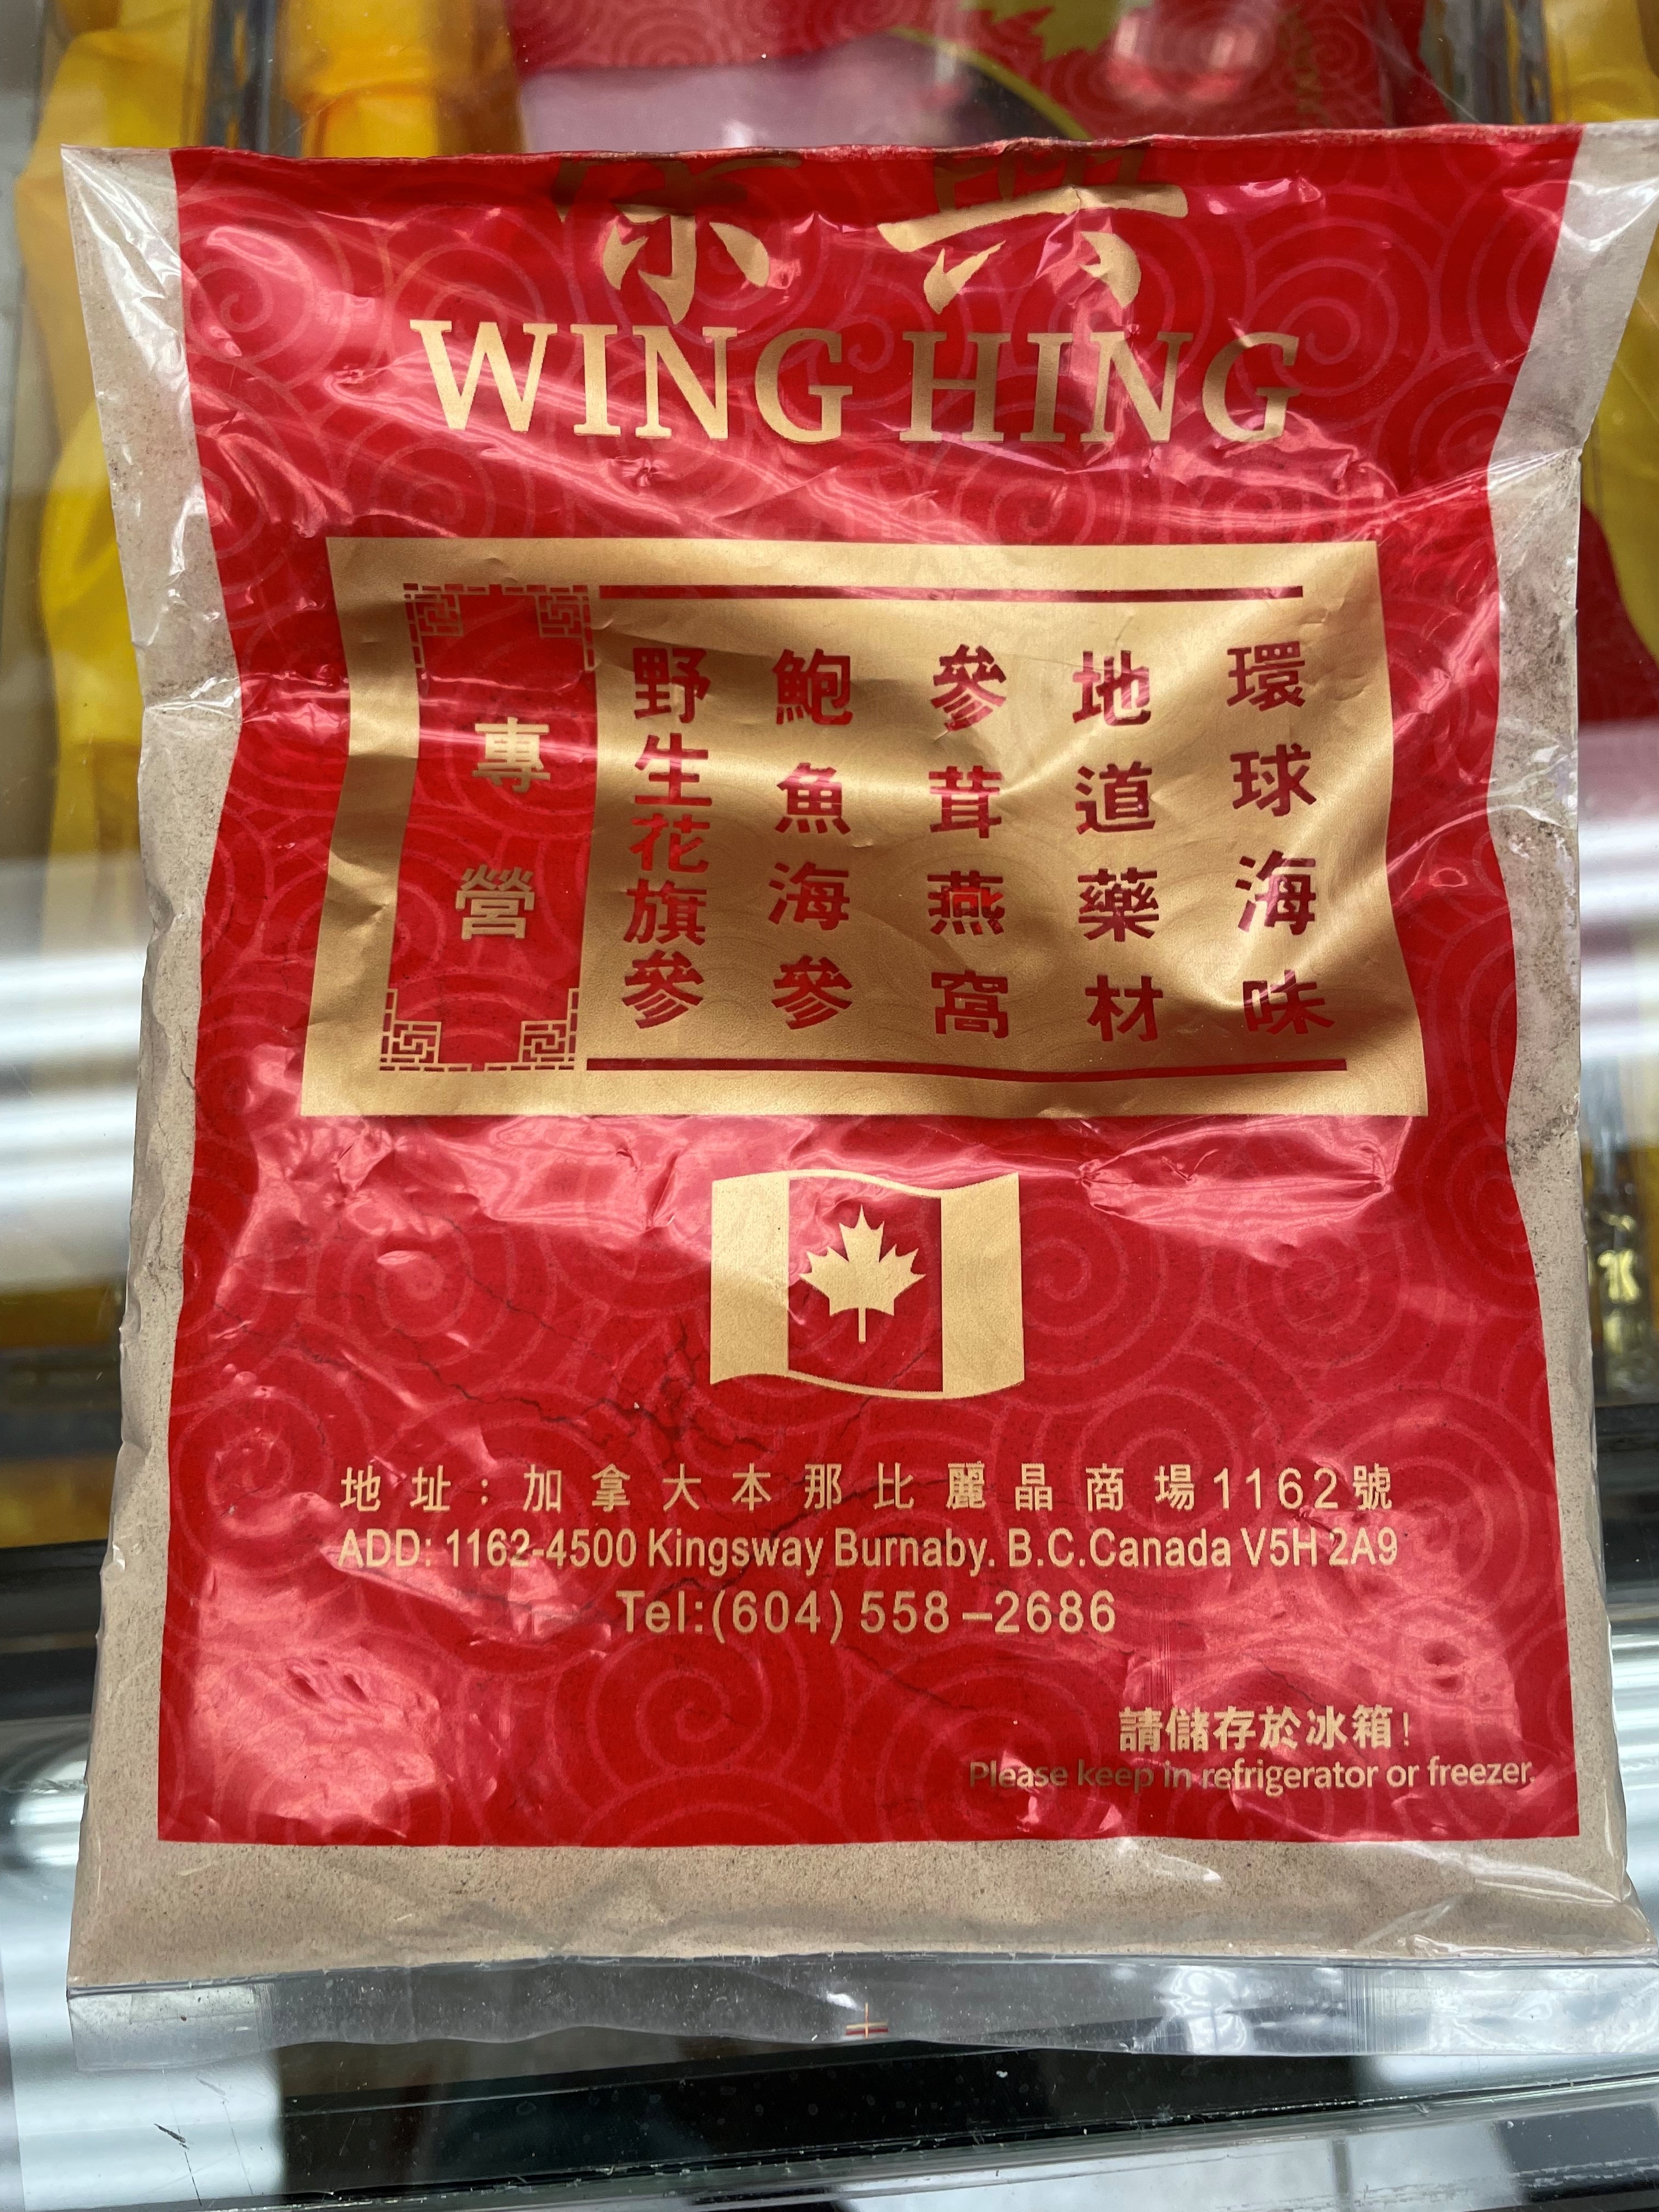 Bag of Wing Hing sand ginger powder